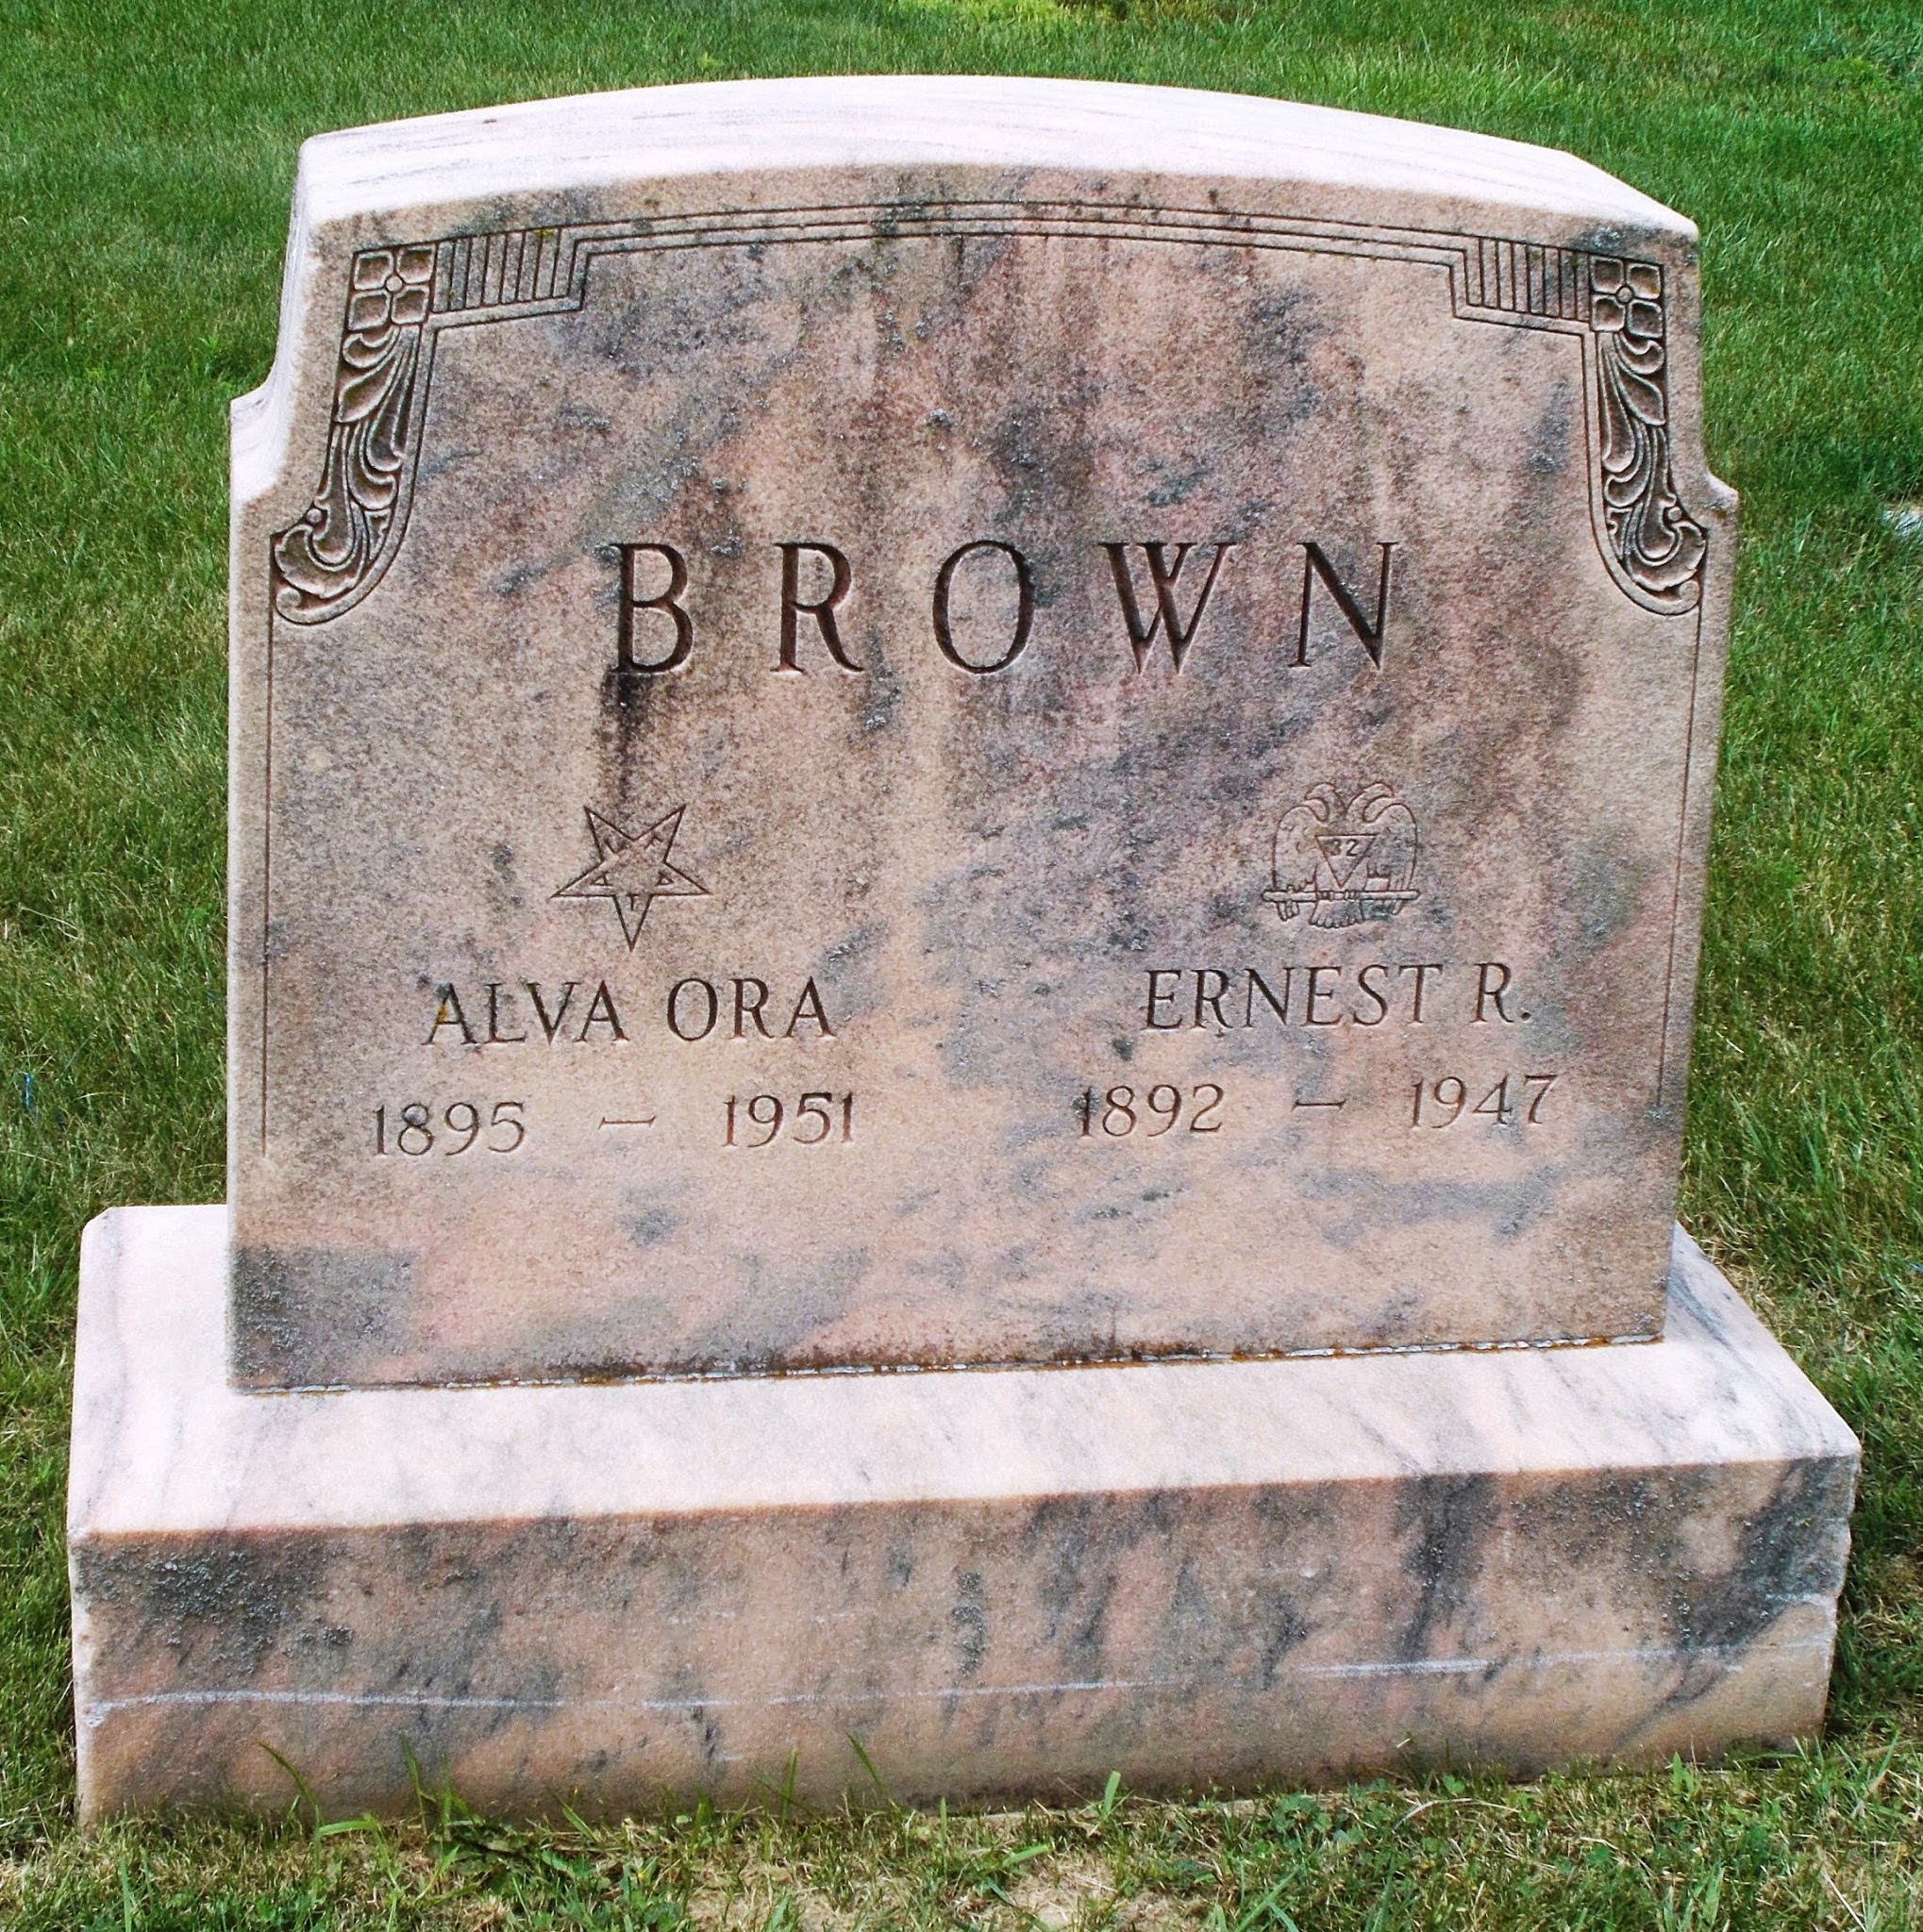 Ernest R Brown